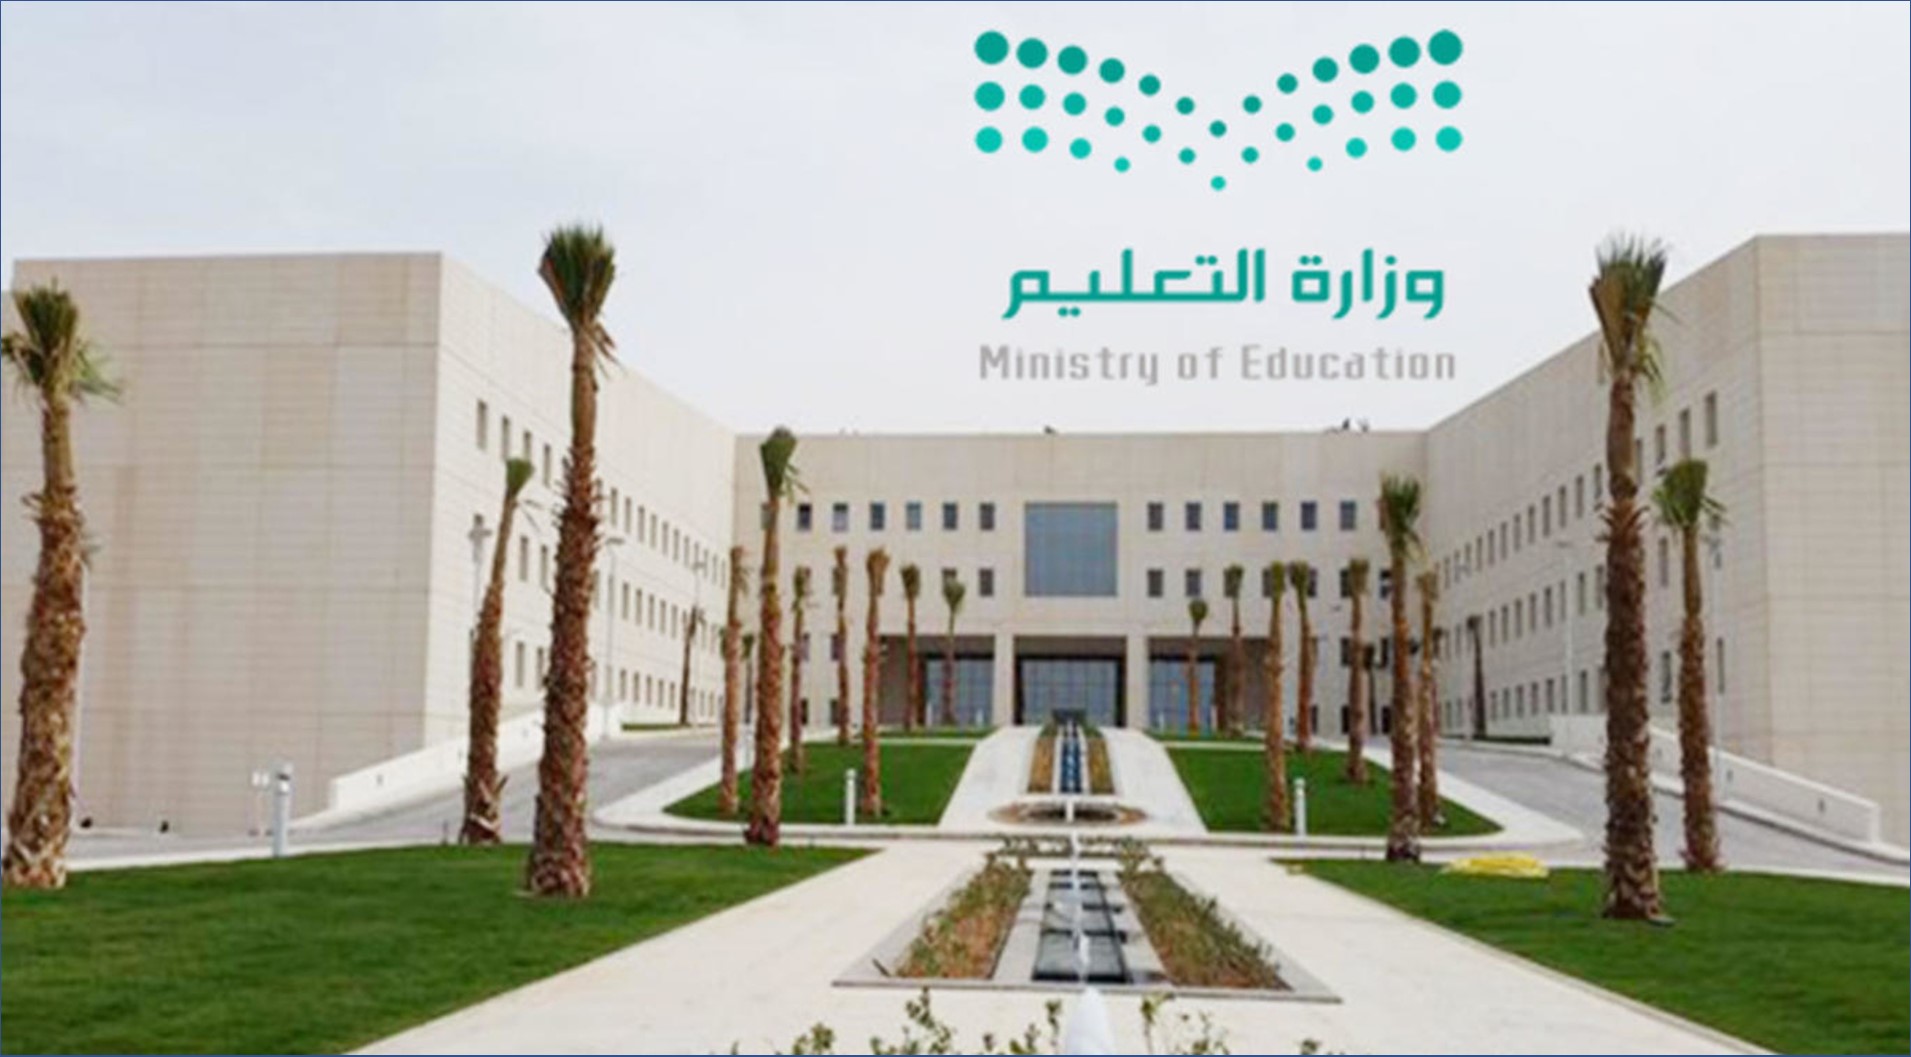 وزارة التعليم بالسعودية تعلن عن برنامج الابتعاث الخارجي